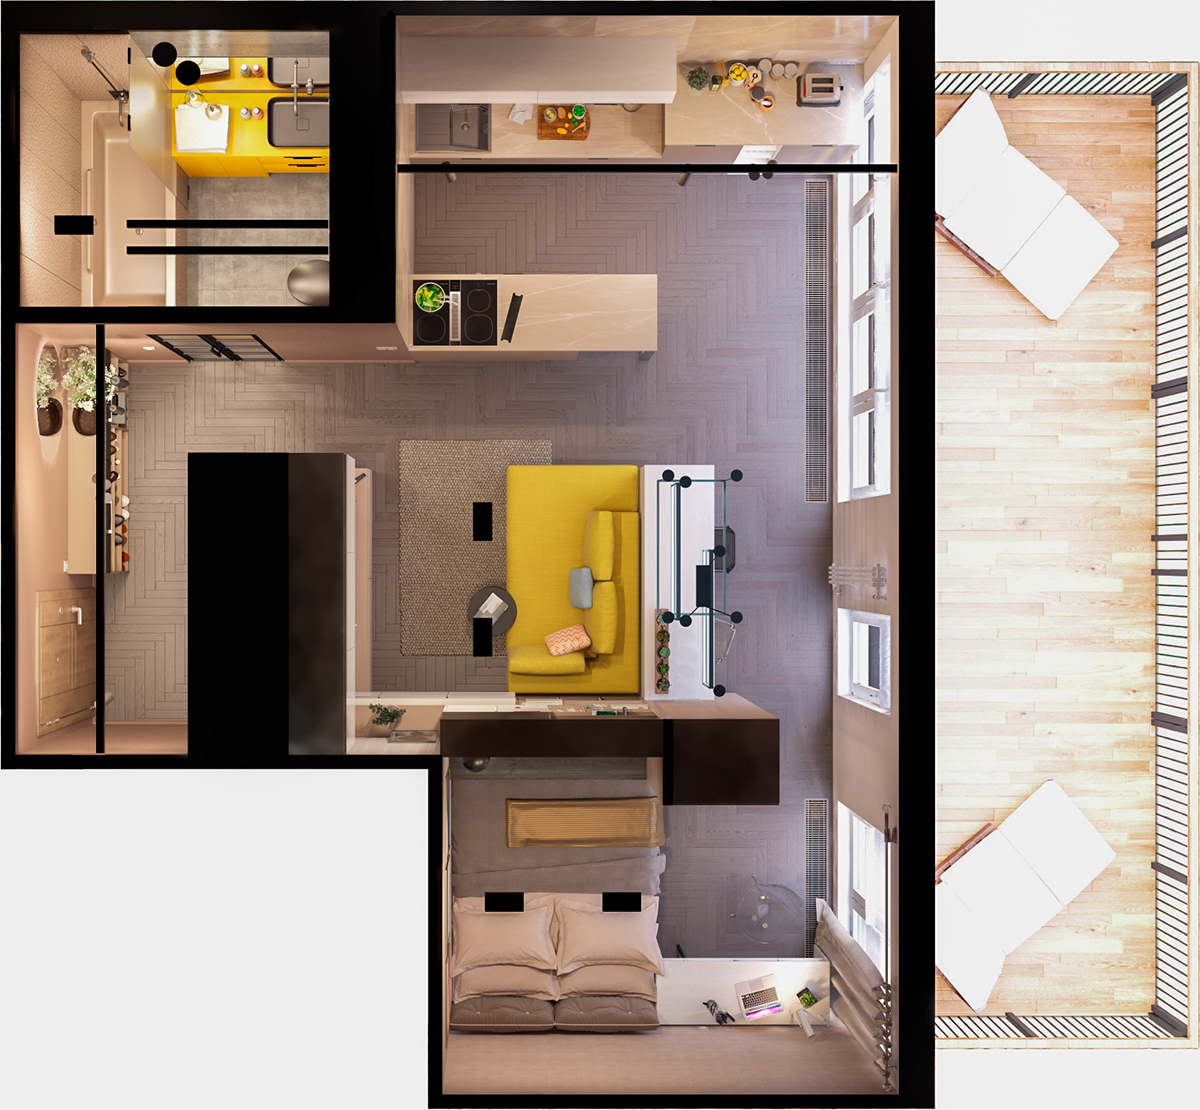 Дизайн кухни-столовой-гостиной: идеи интерьера на 70 фото | SALON